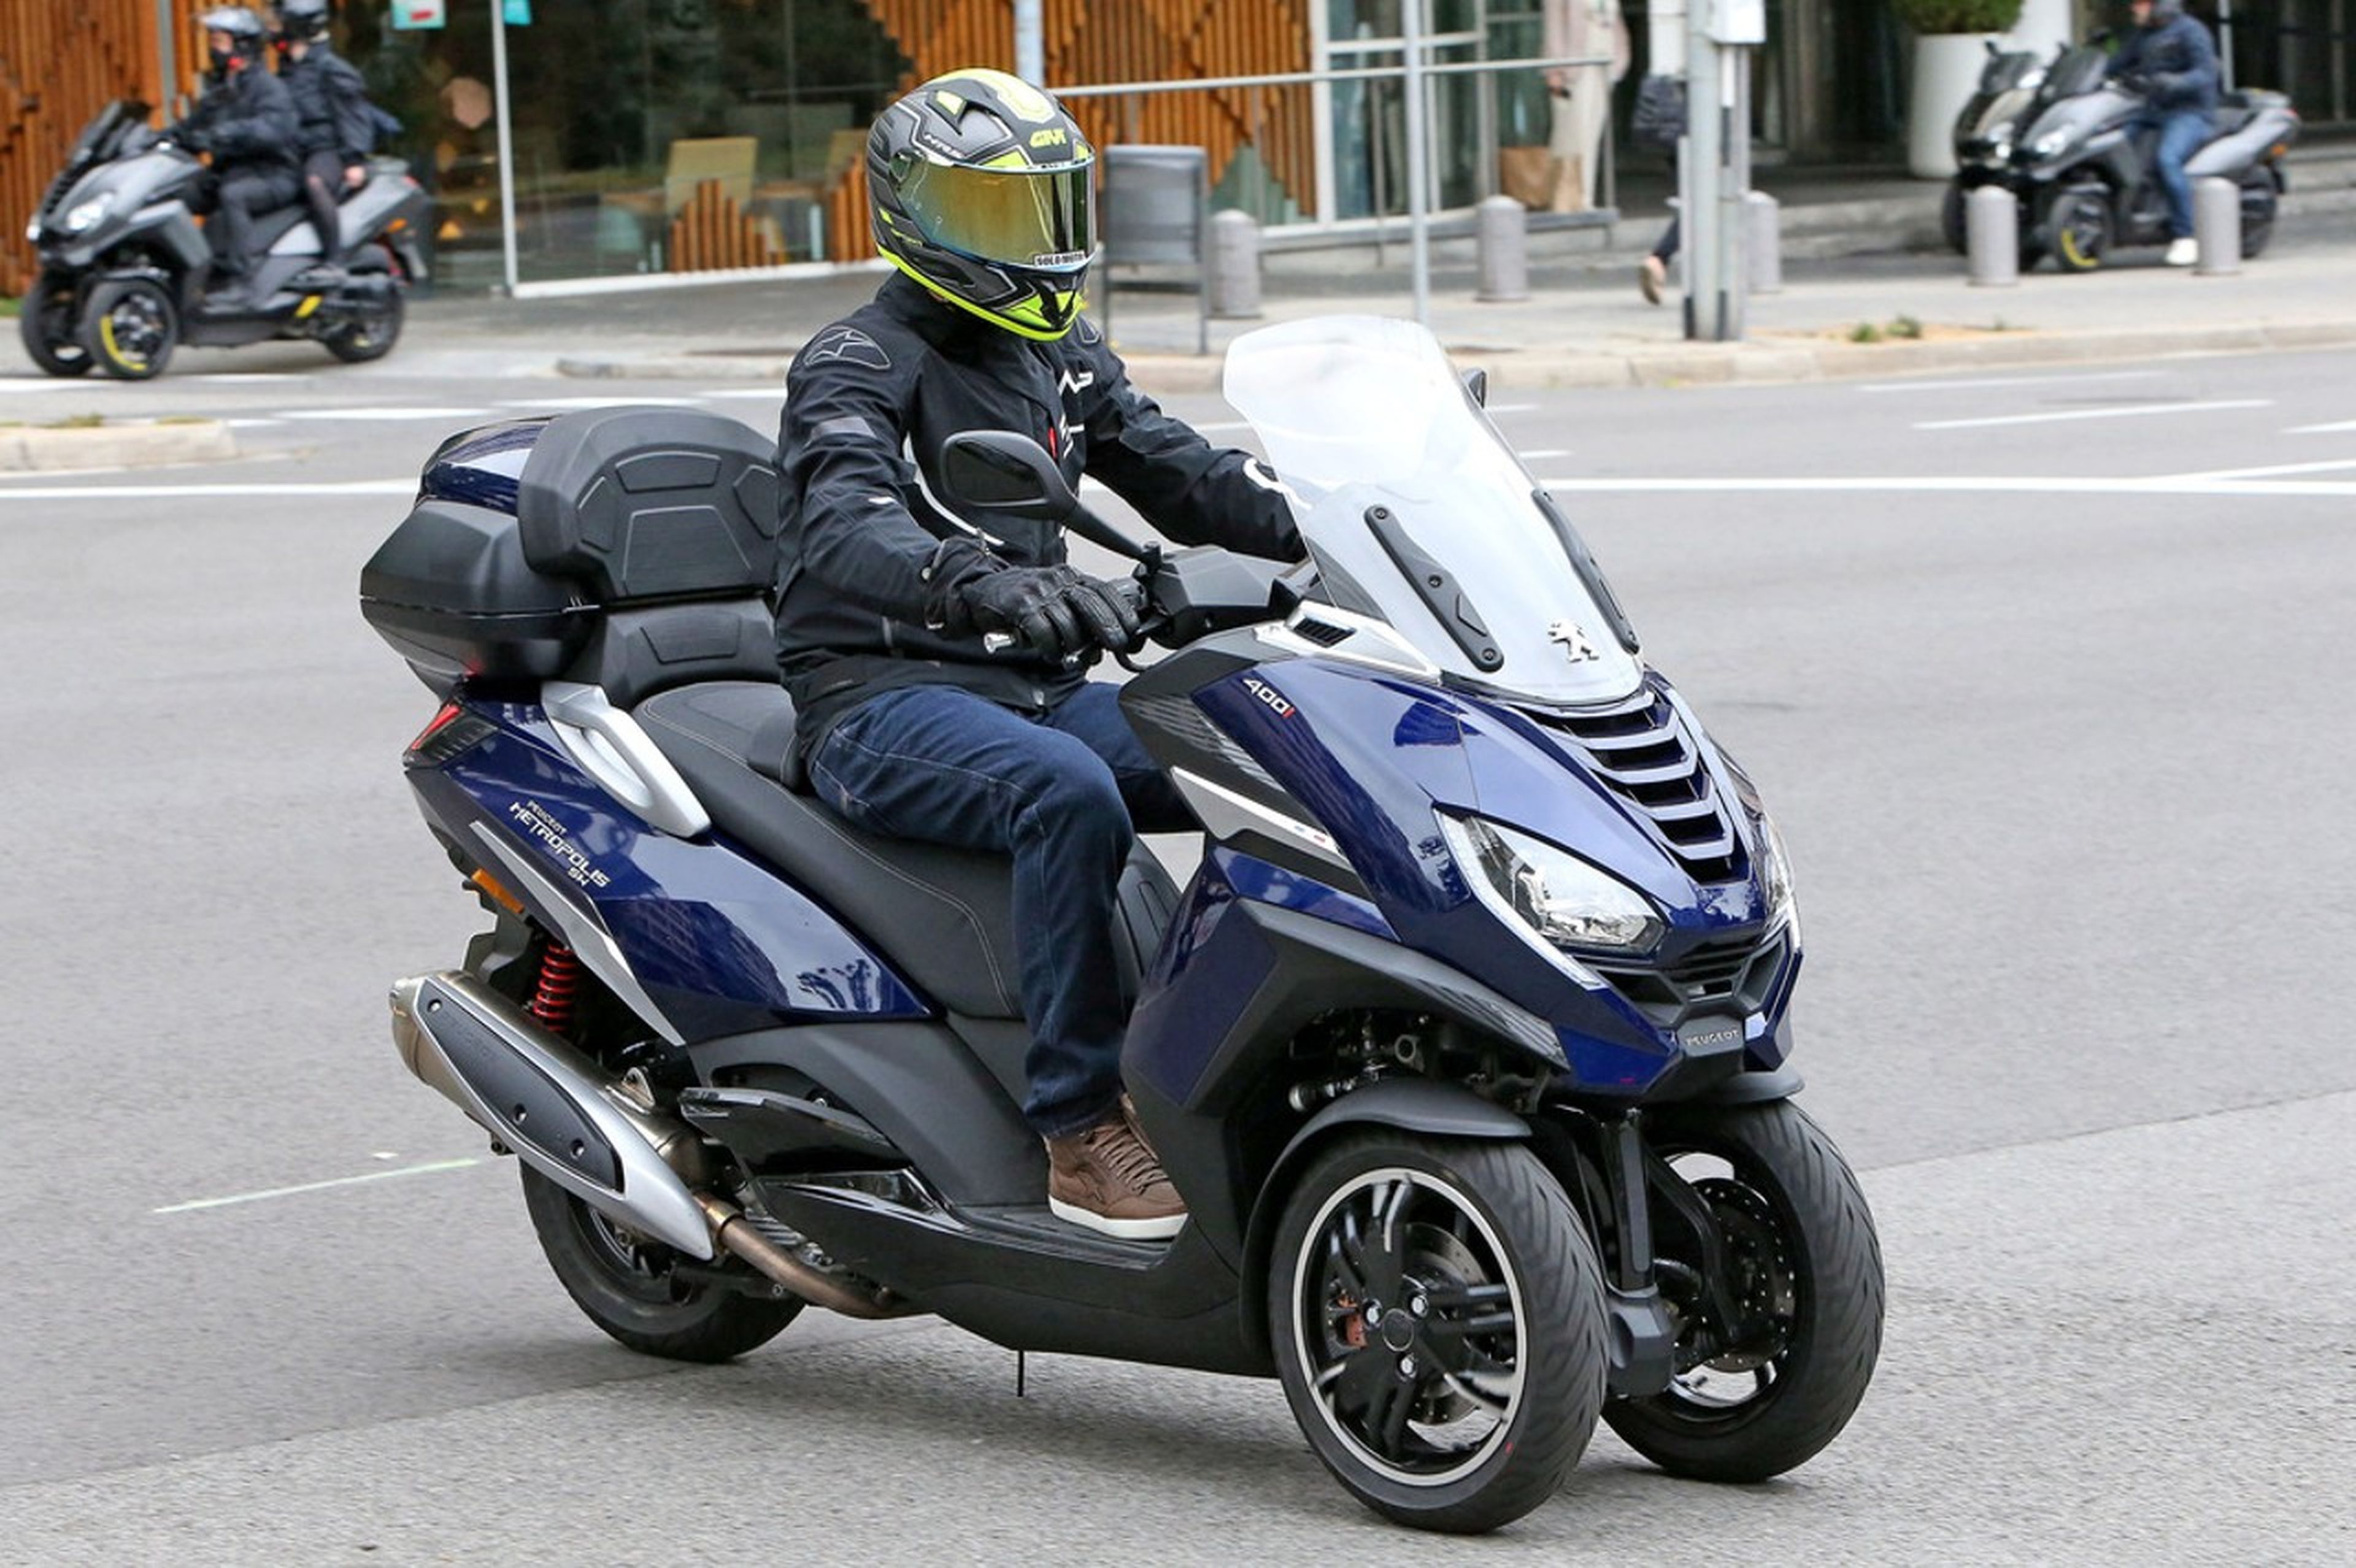 Peugeot Motocyles, la mejor alternativa al coche para ahorrar gasolina